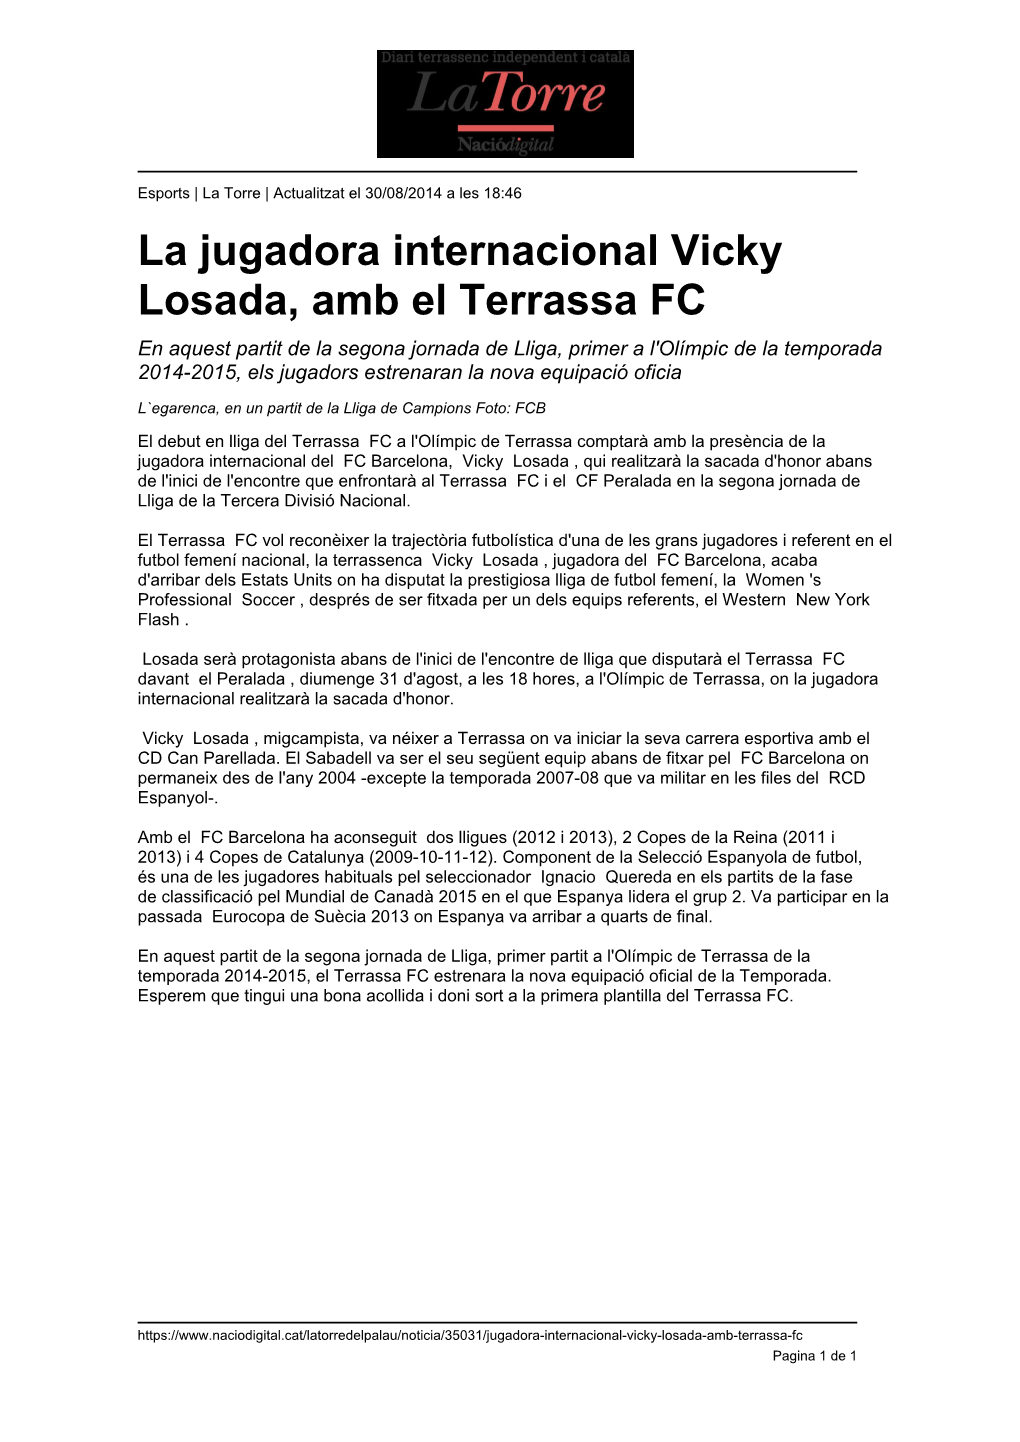 La Jugadora Internacional Vicky Losada, Amb El Terrassa FC